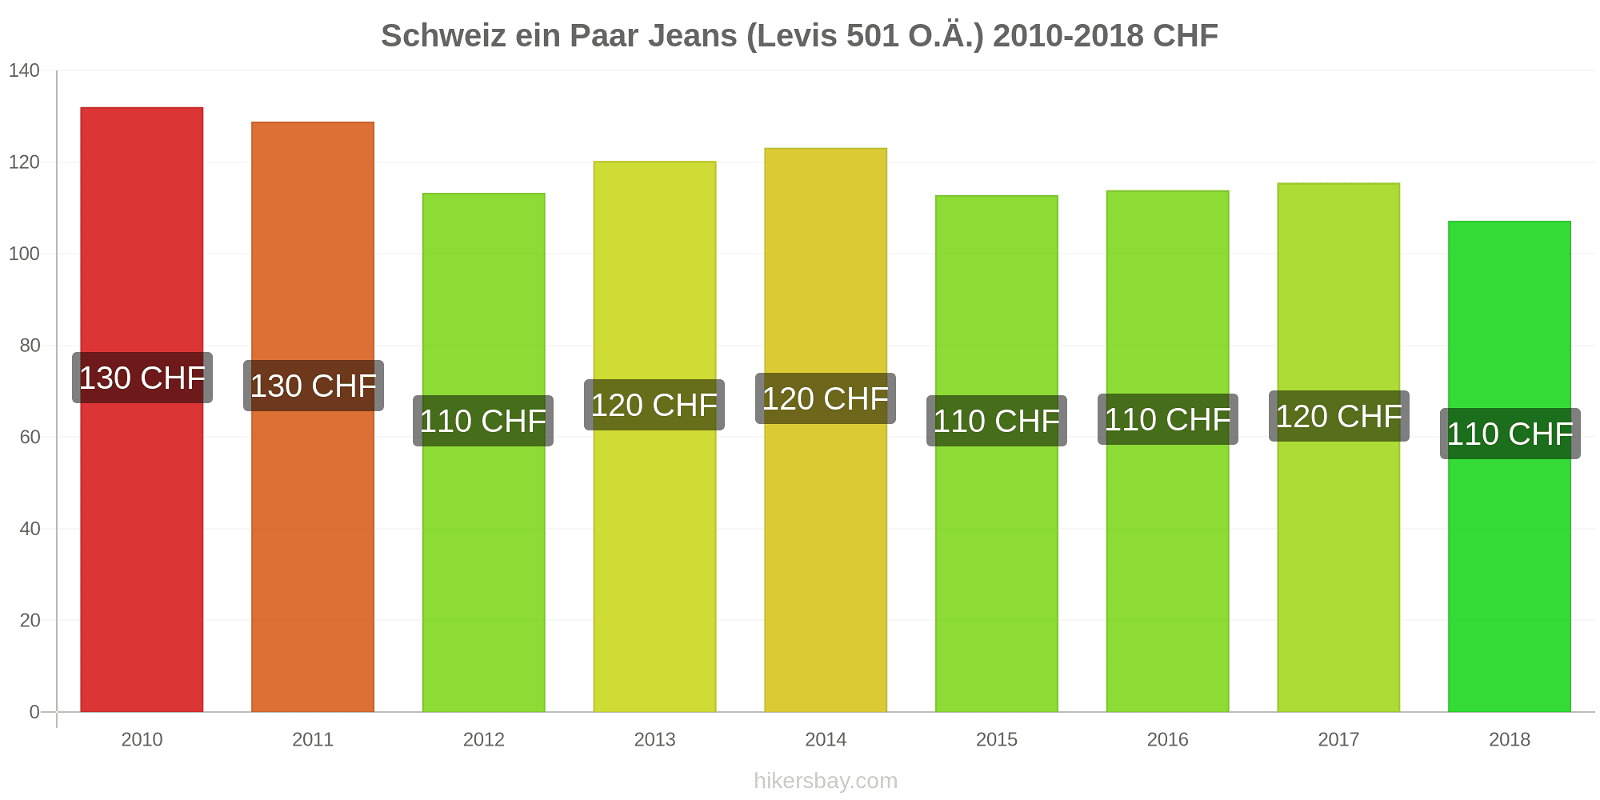 Schweiz Preisänderungen 1 Paar Jeans (Levis 501 oder ähnlich) hikersbay.com